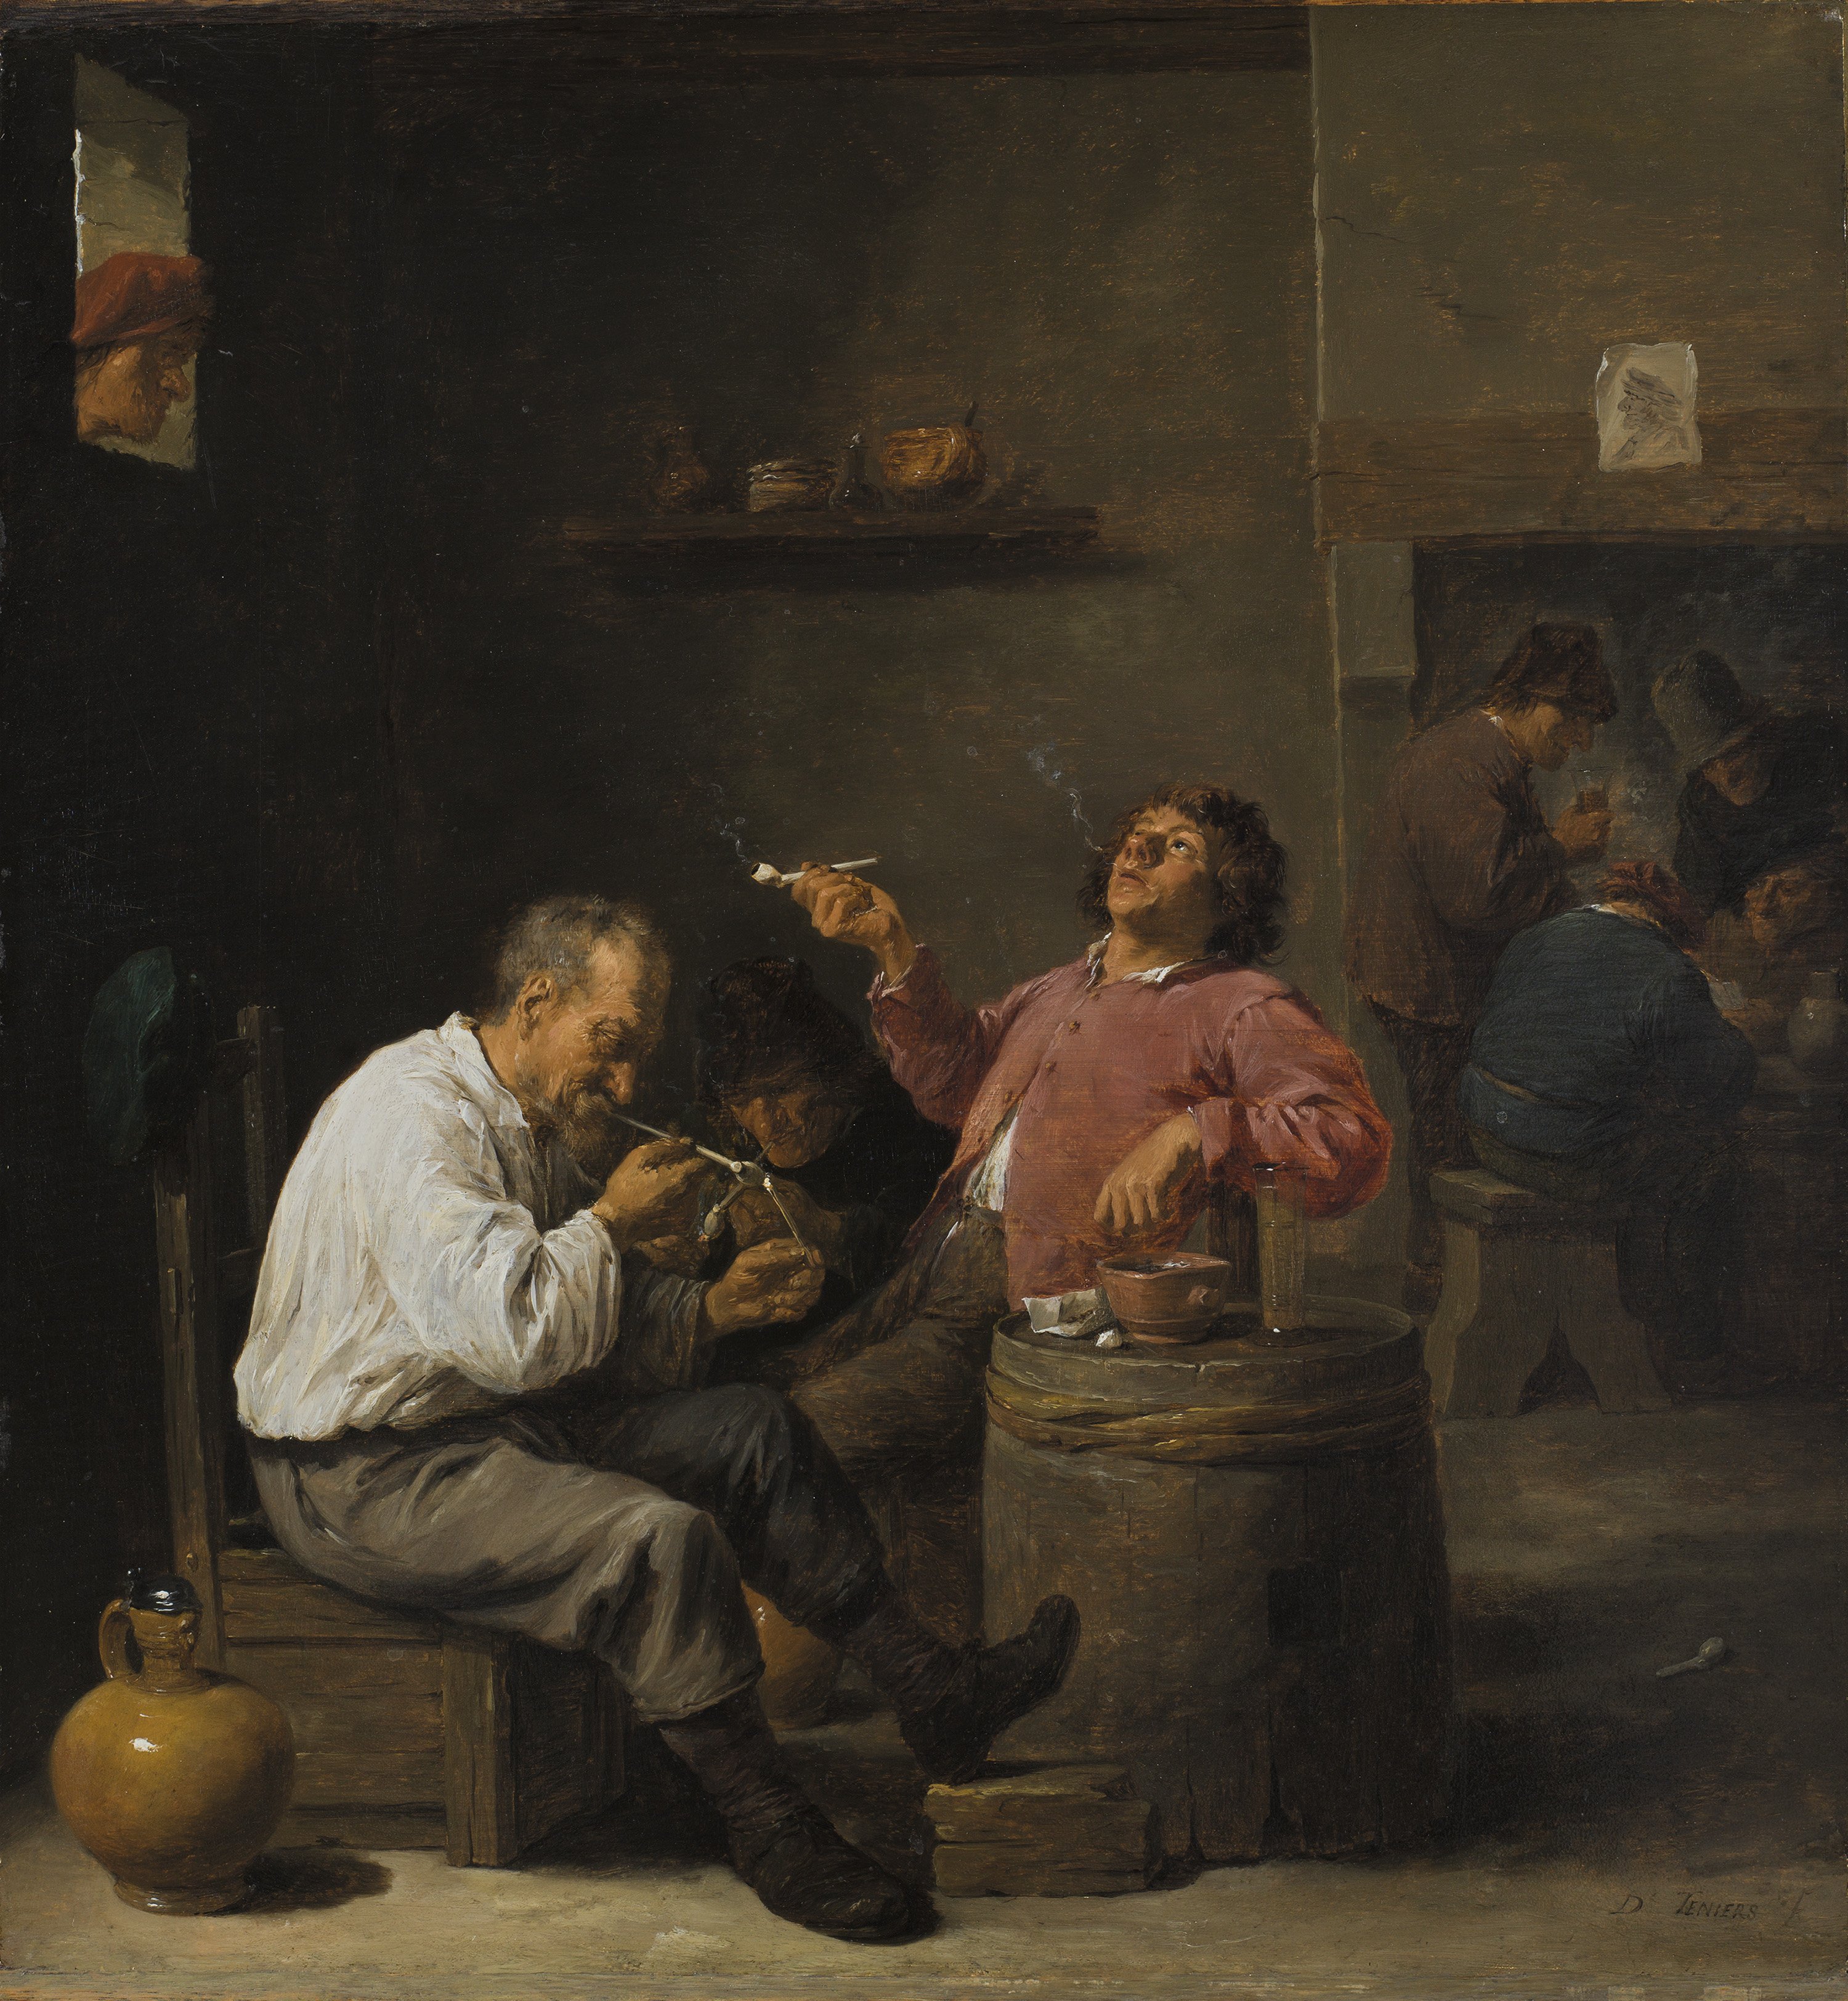 Smokers in an Interior. Fumadores en un interior, c. 1637